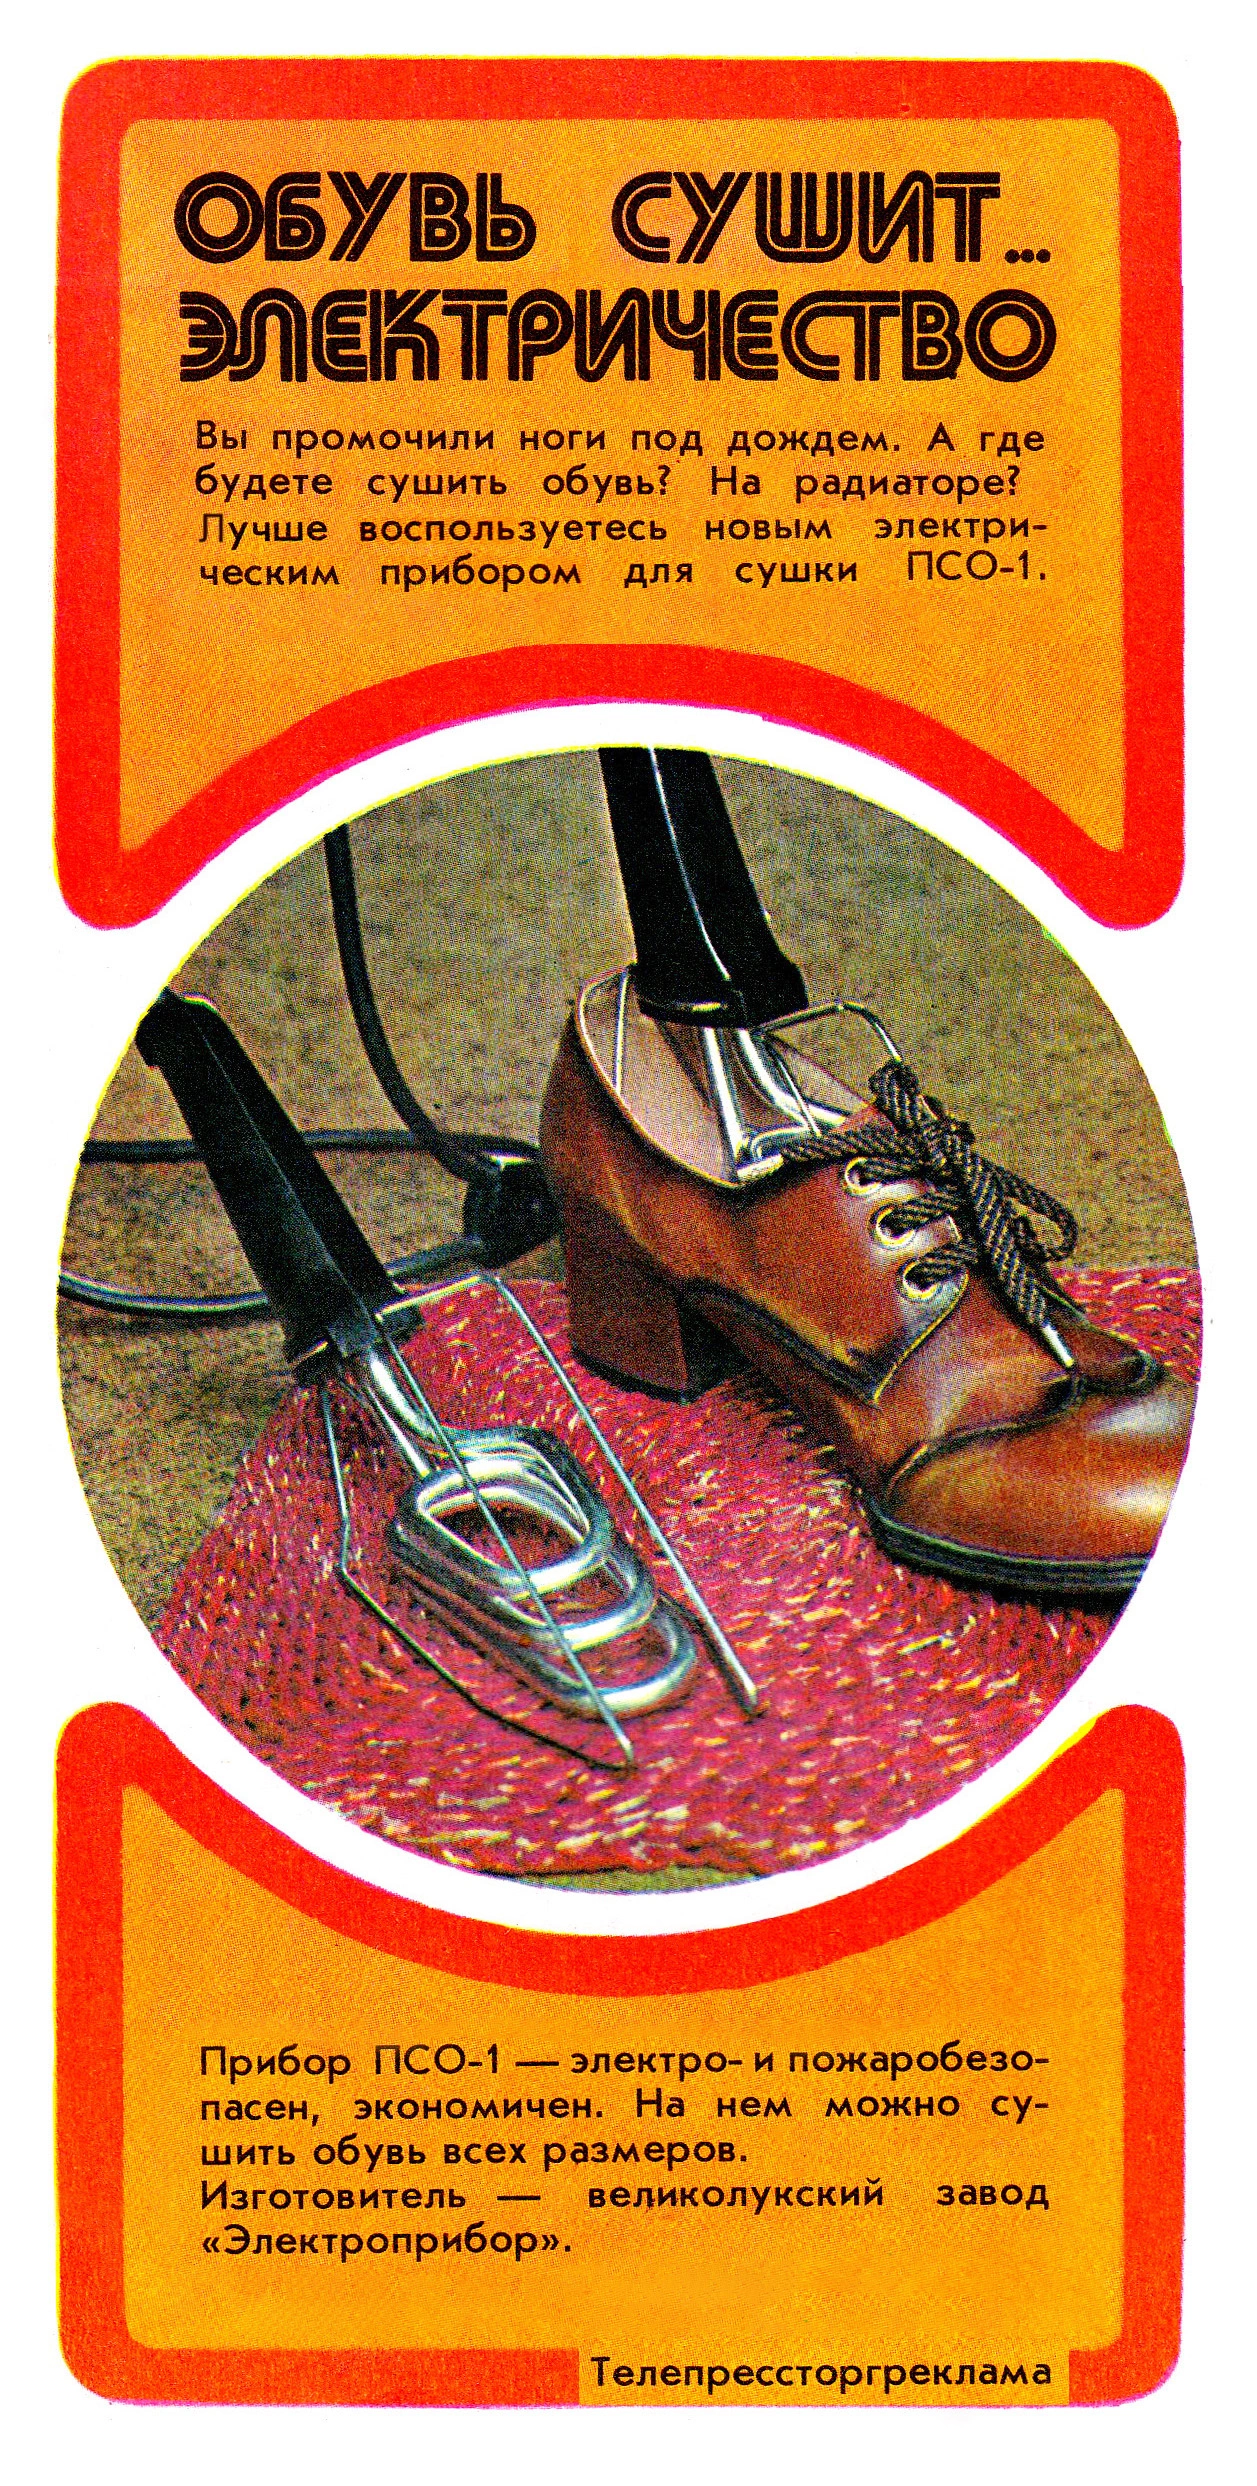 <p>В 1970-е граждан убеждали сушить промокшую обувь не на радиаторе, а при помощи специального электрического прибора, с виду напоминавшего кипятильник. Он вставлялся внутрь обуви, не деформируя ее благодаря своей форме и ограничительной решетке. Интересно, что изобретение Великолукского завода &laquo;Электроприбор&raquo; активно пользуется спросом и сегодня. На Ozon у ПСО стоит плашка &laquo;Бестселлер&raquo;. Реклама из журнала &laquo;Новые товары&raquo; №&nbsp;8/1977</p>